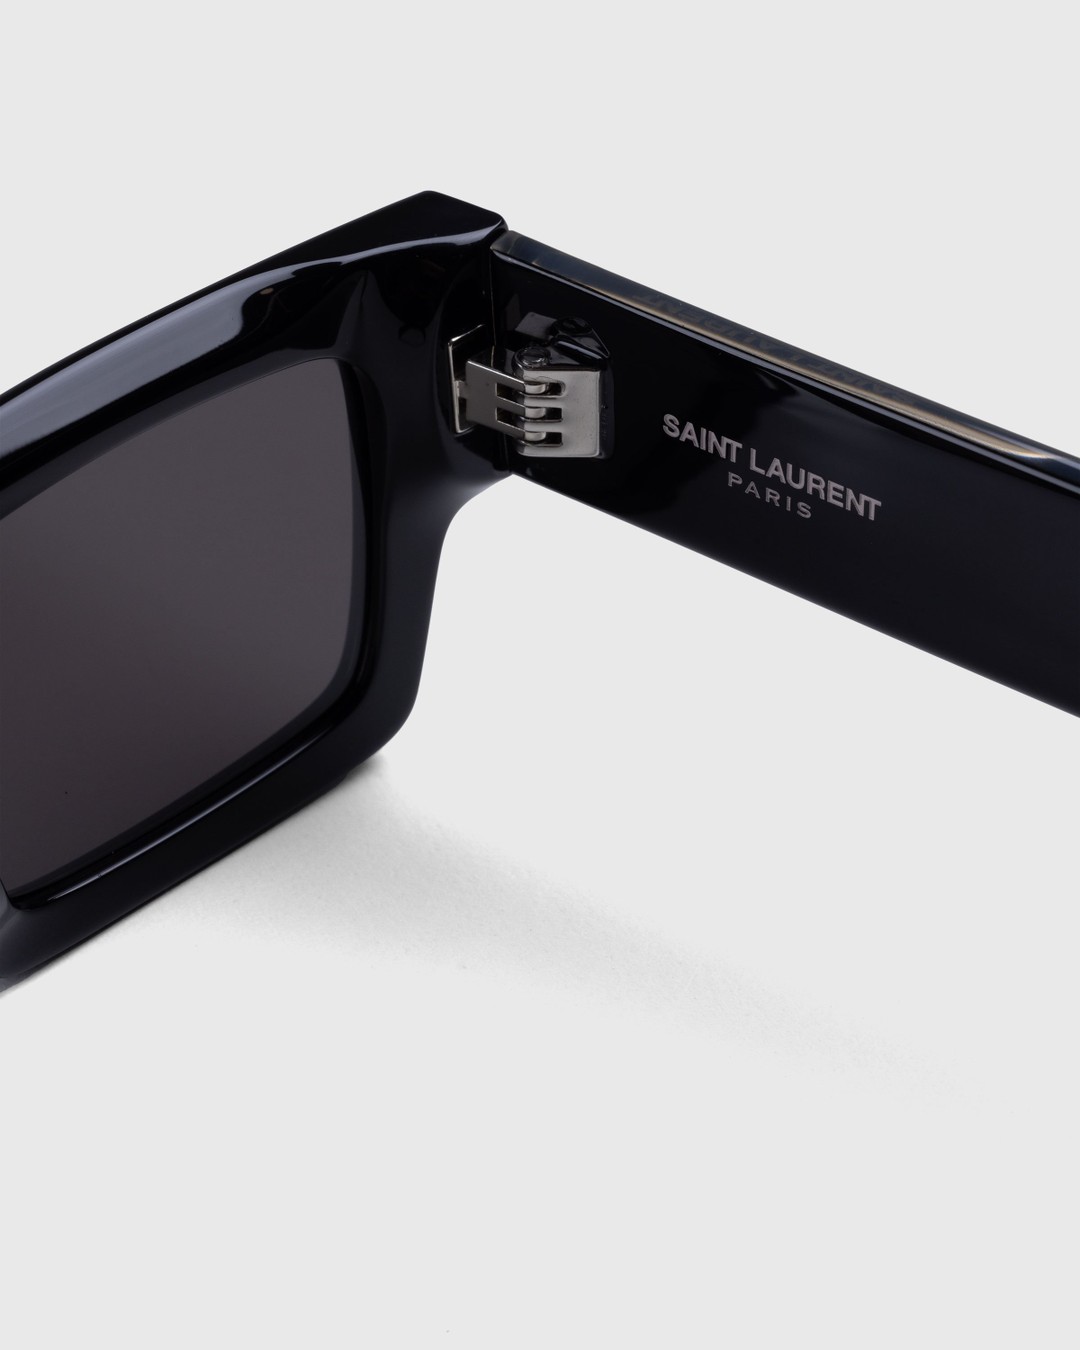 Saint Laurent – SL 572 Square Frame Sunglasses Black/Crystal - Eyewear - Multi - Image 3